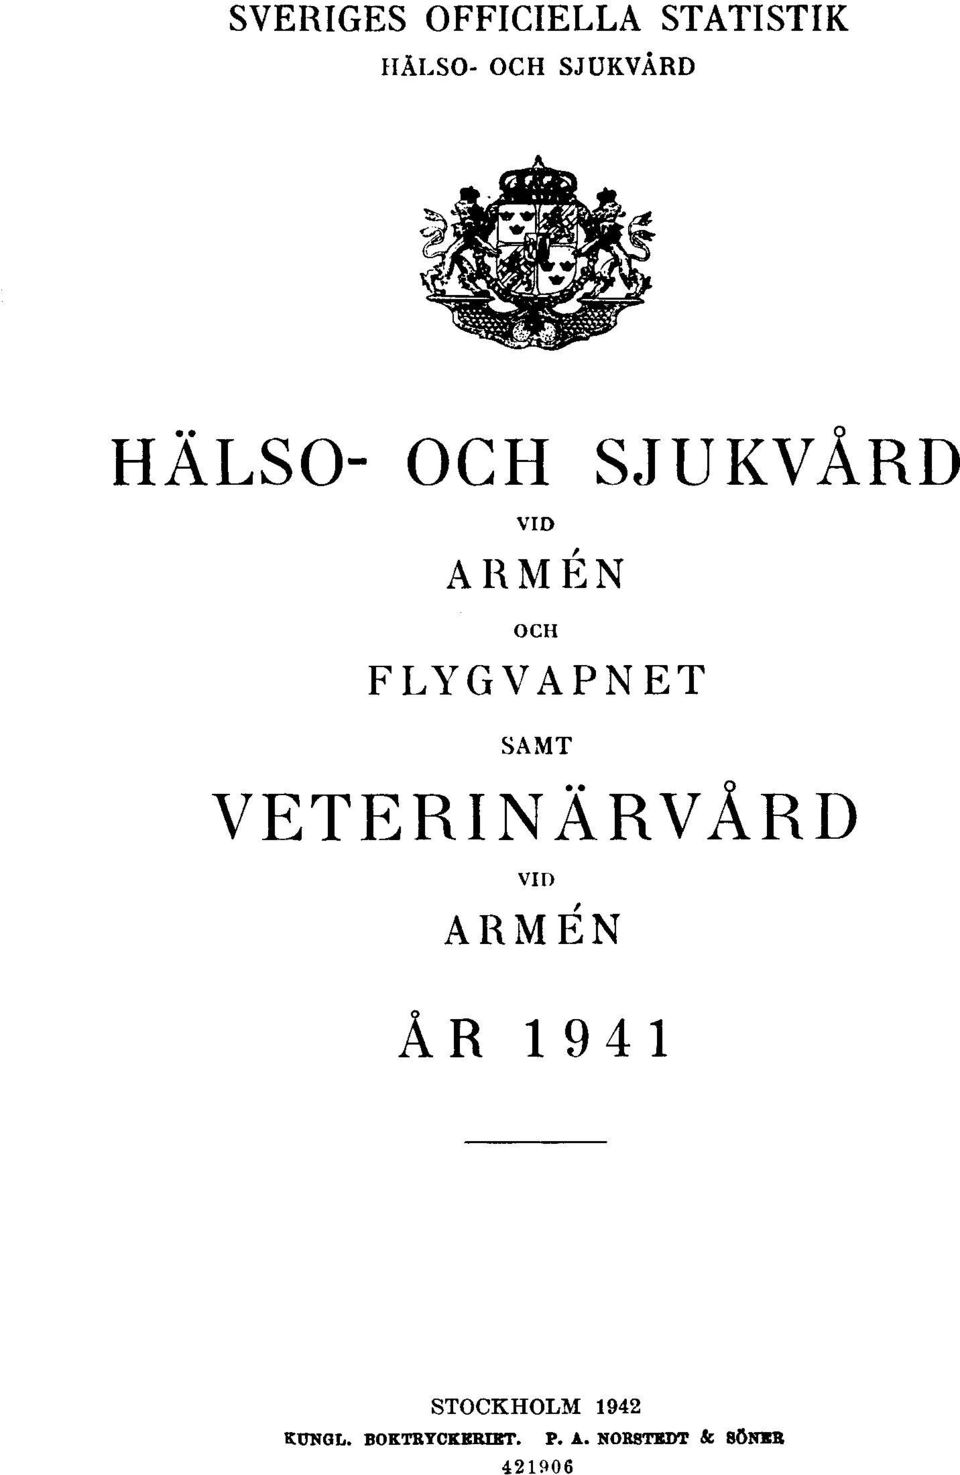 VETERINÄRVÅRD VID ARMÉN ÅR 1941 STOCKHOLM 1942